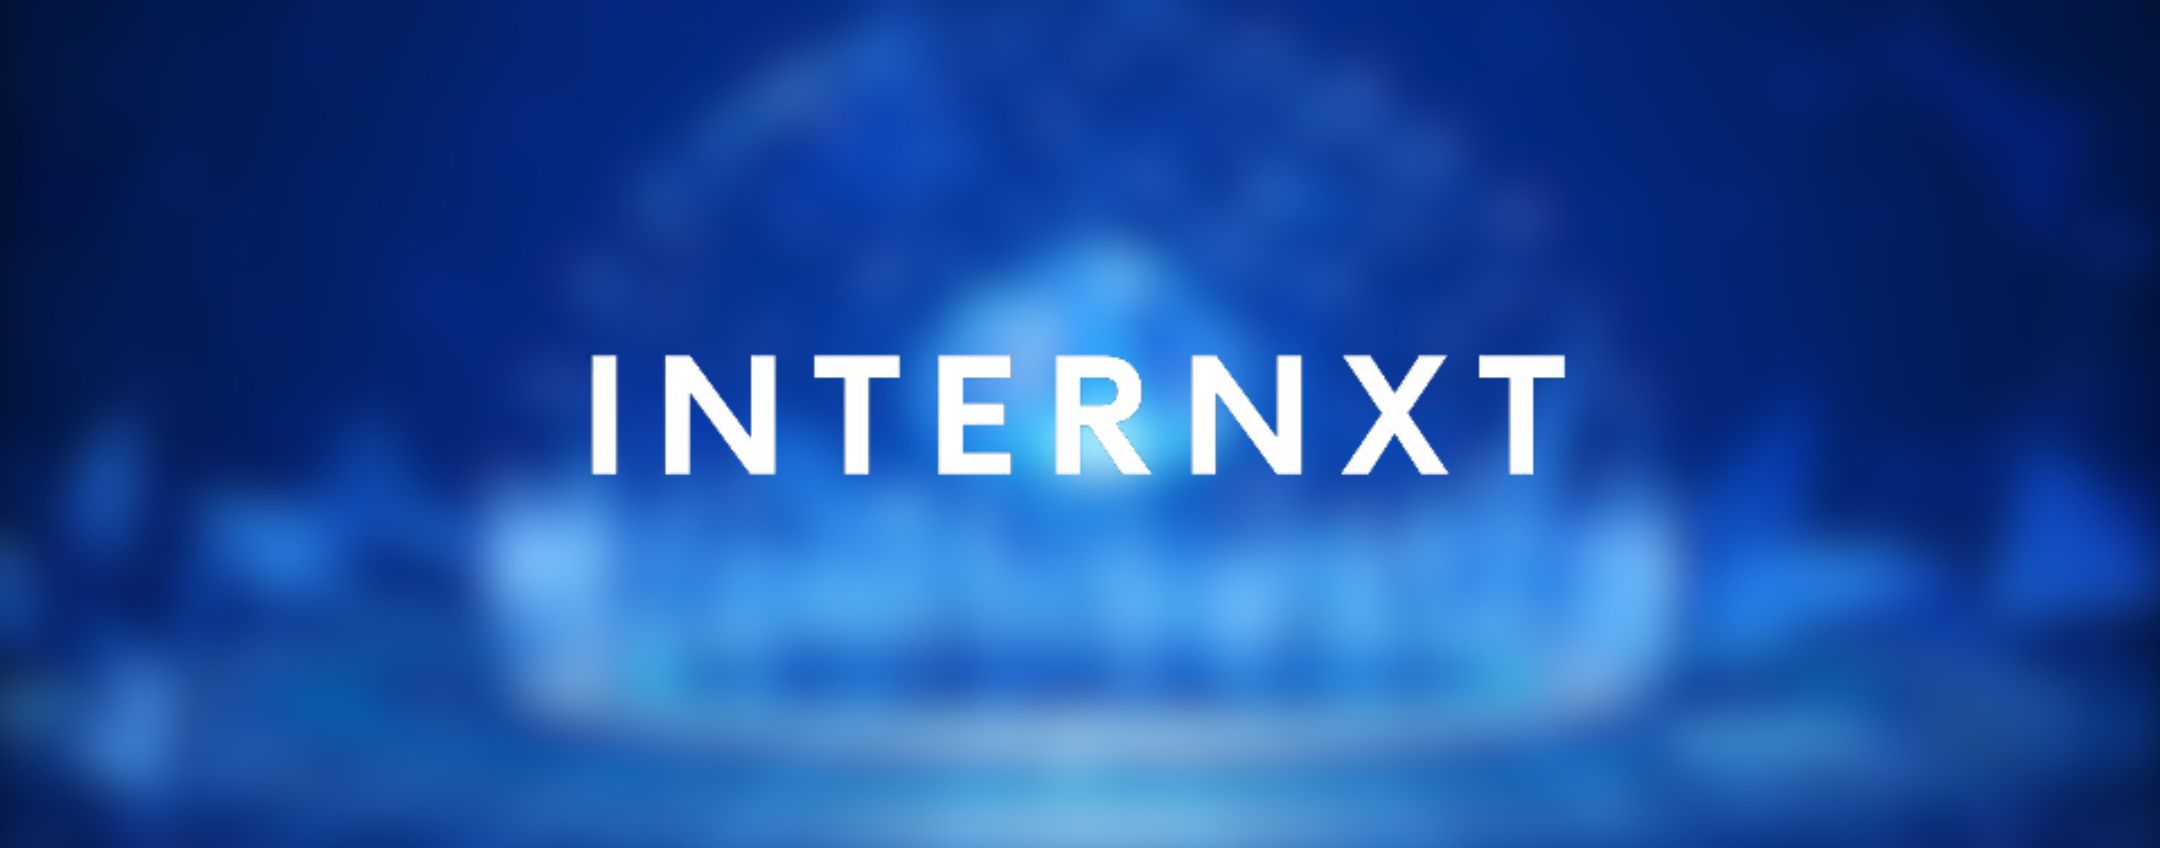 Internxt cloud storage